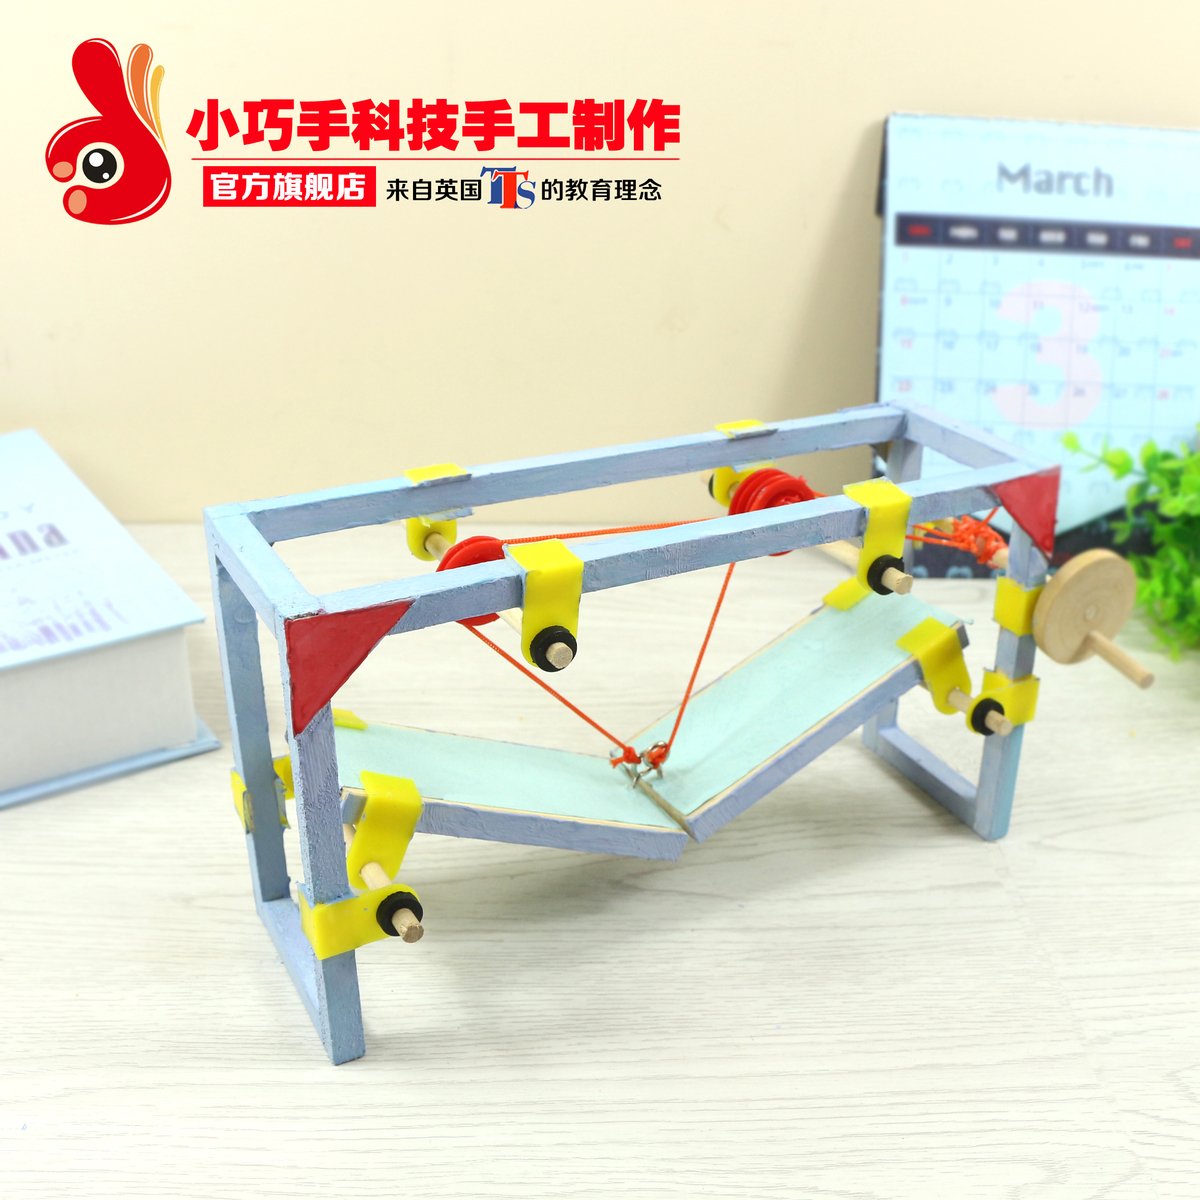 diy益智创意玩具模型拼装材料升降桥梁少年宫儿童手工科技小制作